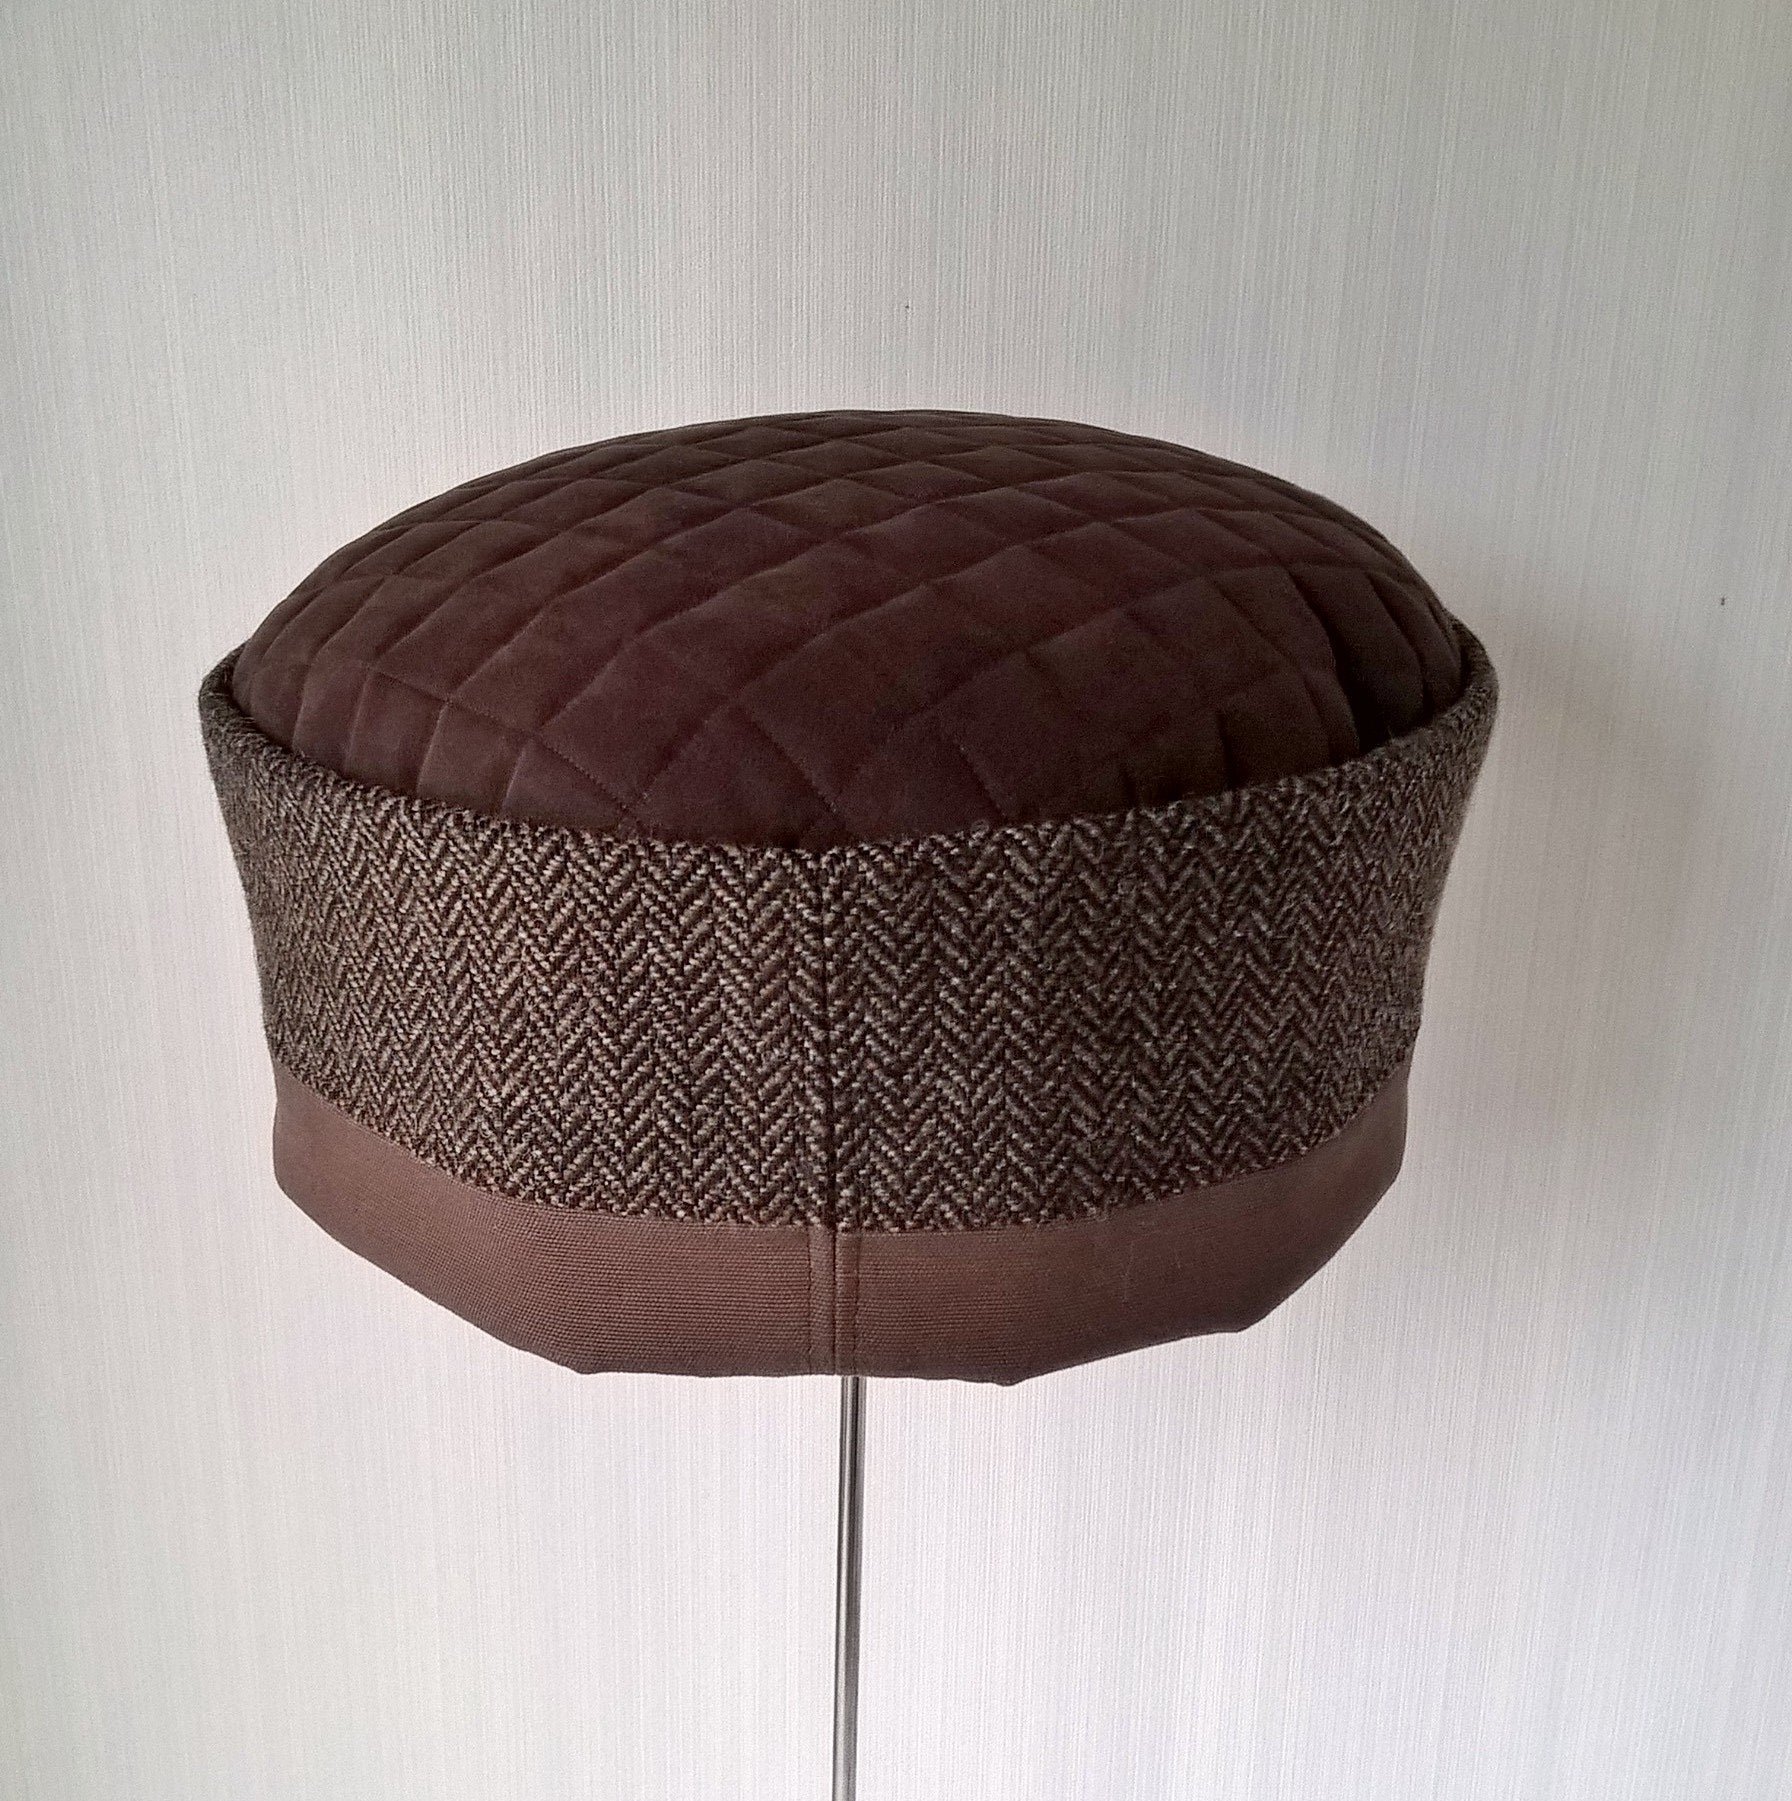 Back view of brown herringbone wool hat